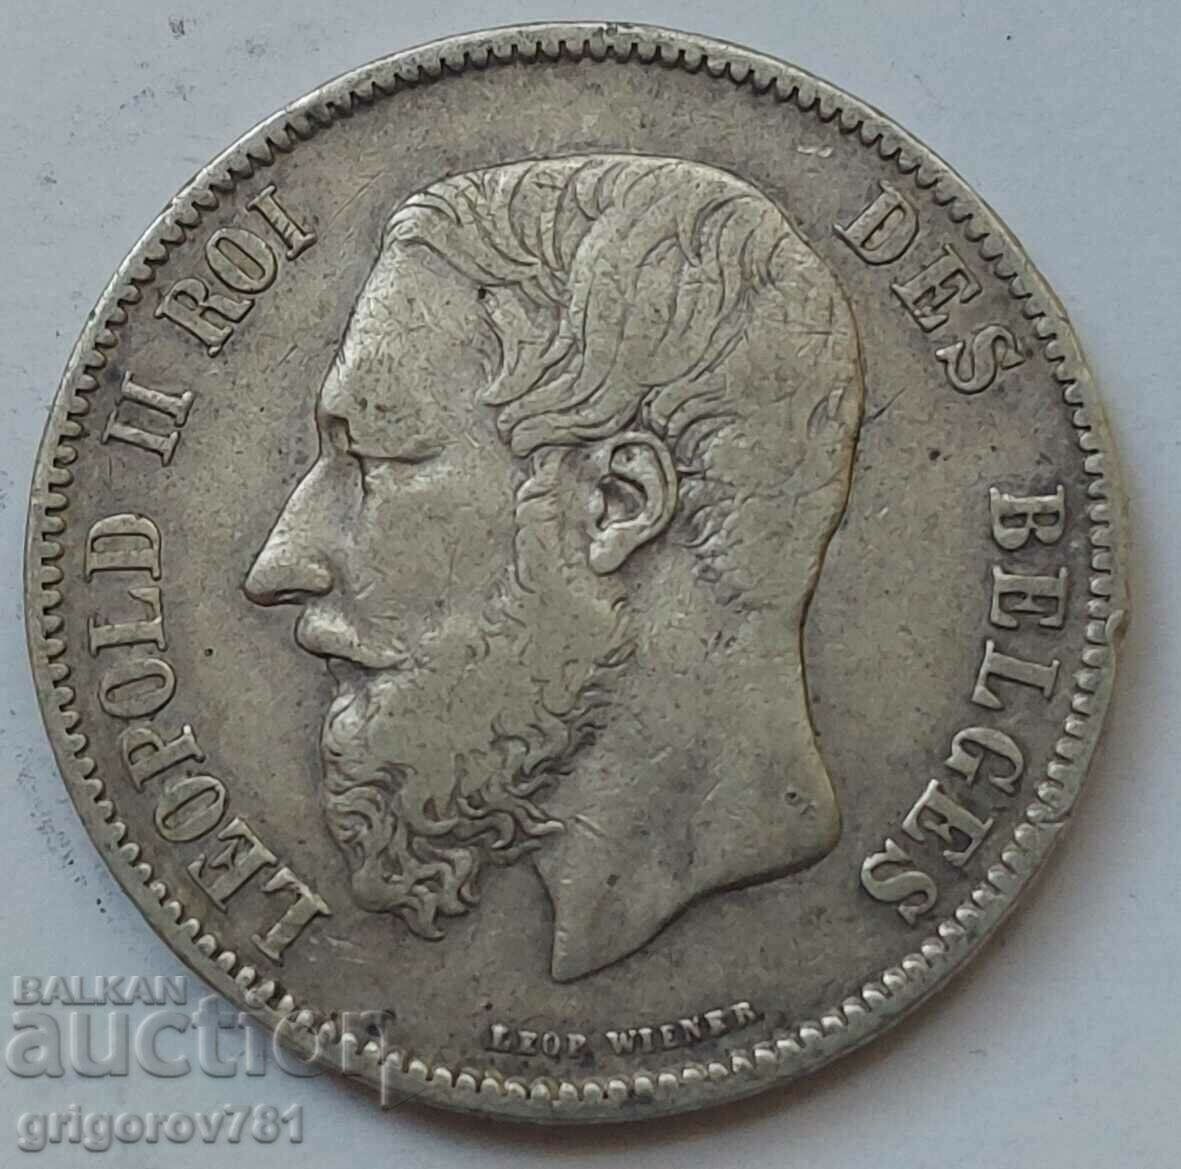 5 Francs Silver Belgium 1869 Silver Coin #165